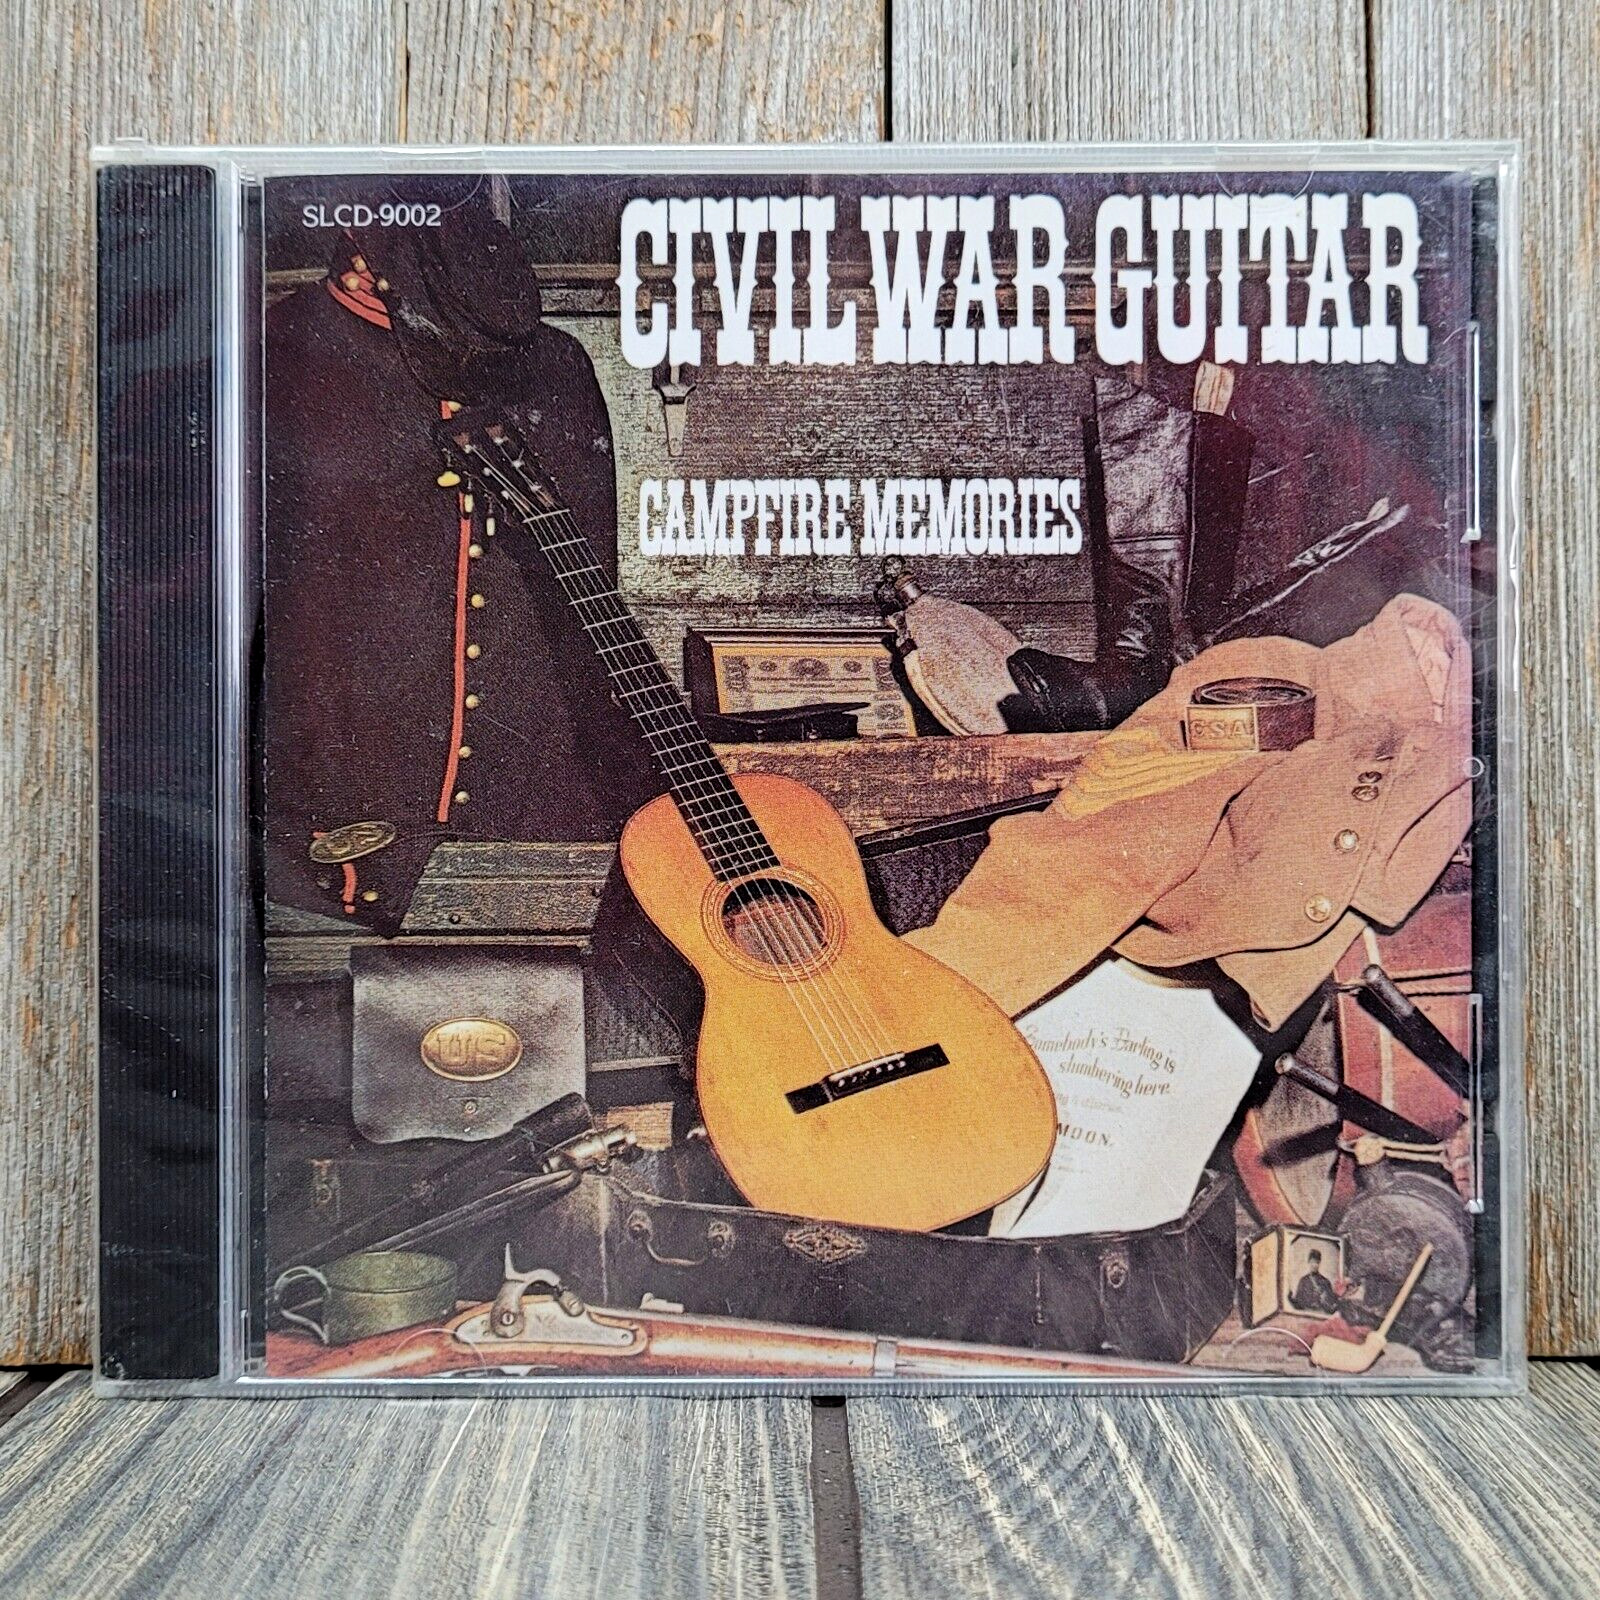 Civil War Guitar Campfire Memories by Kirke Browne (CD, 1994) 1850 Martin 2 NEW